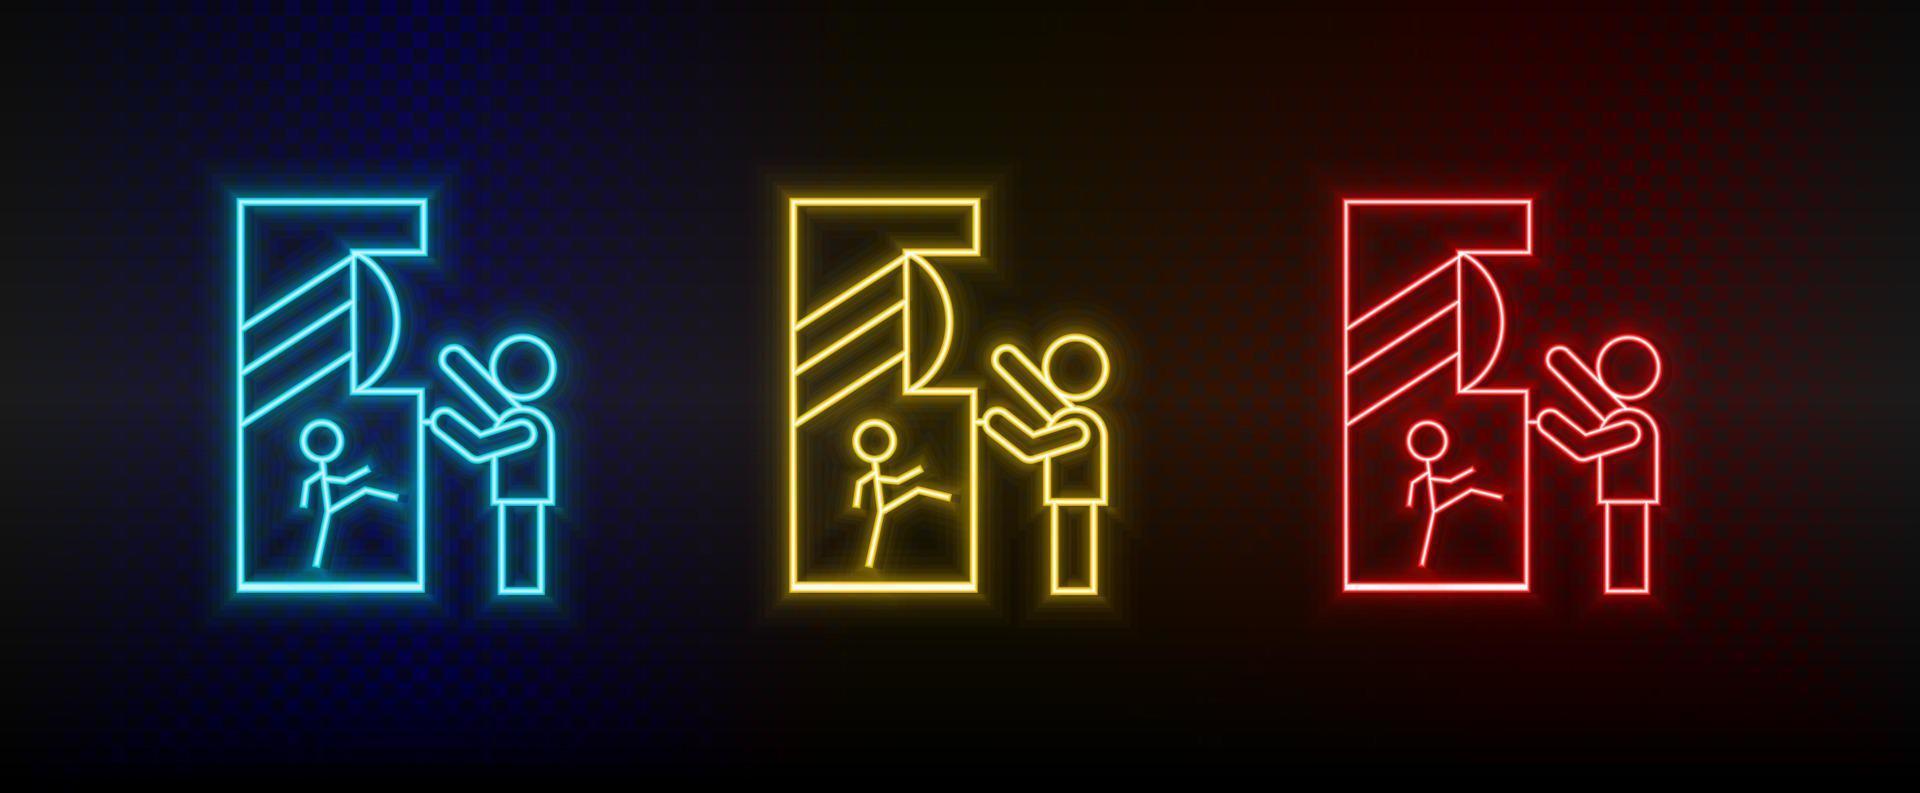 Neon-Symbole. Retro-Konsolen-Arcade für Kinderspieler. Satz von roten, blauen, gelben Neonvektorsymbolen auf dunklem Hintergrund vektor